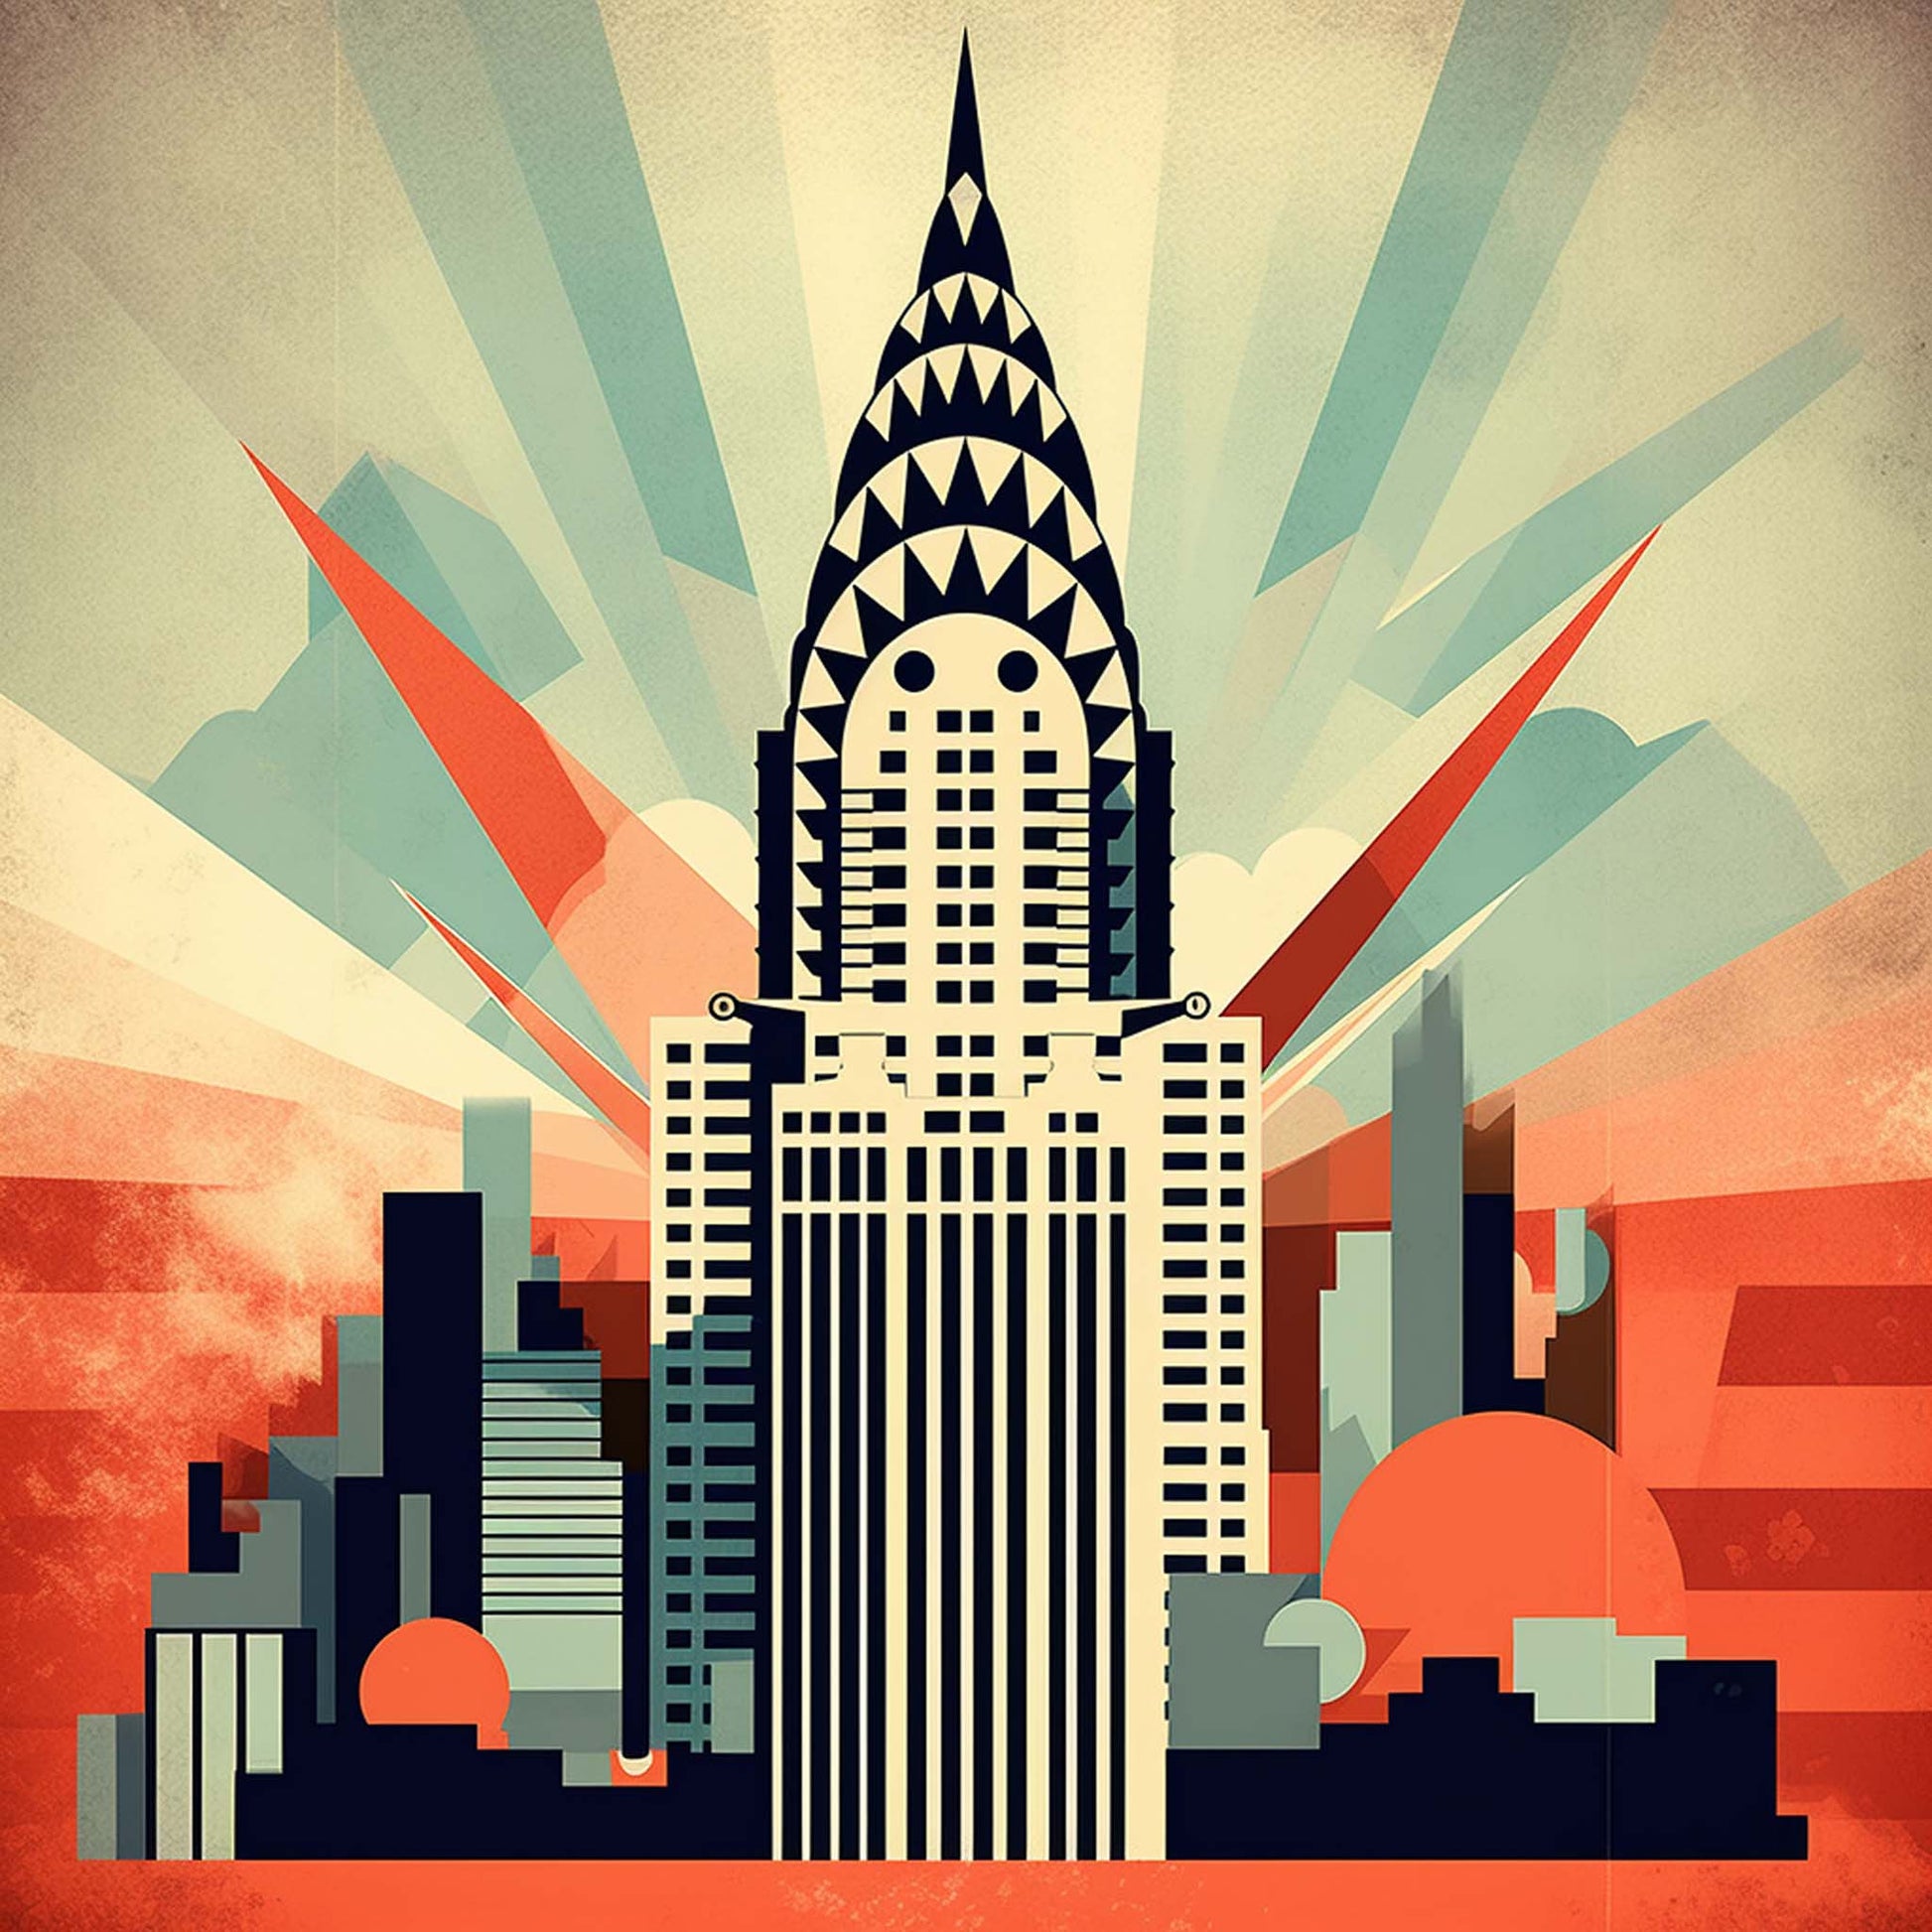 Urbanisto - New York Chrysler Building - Wandbild in der Stilrichtung des  Minimalismus – urbanisto - Liebe Deine